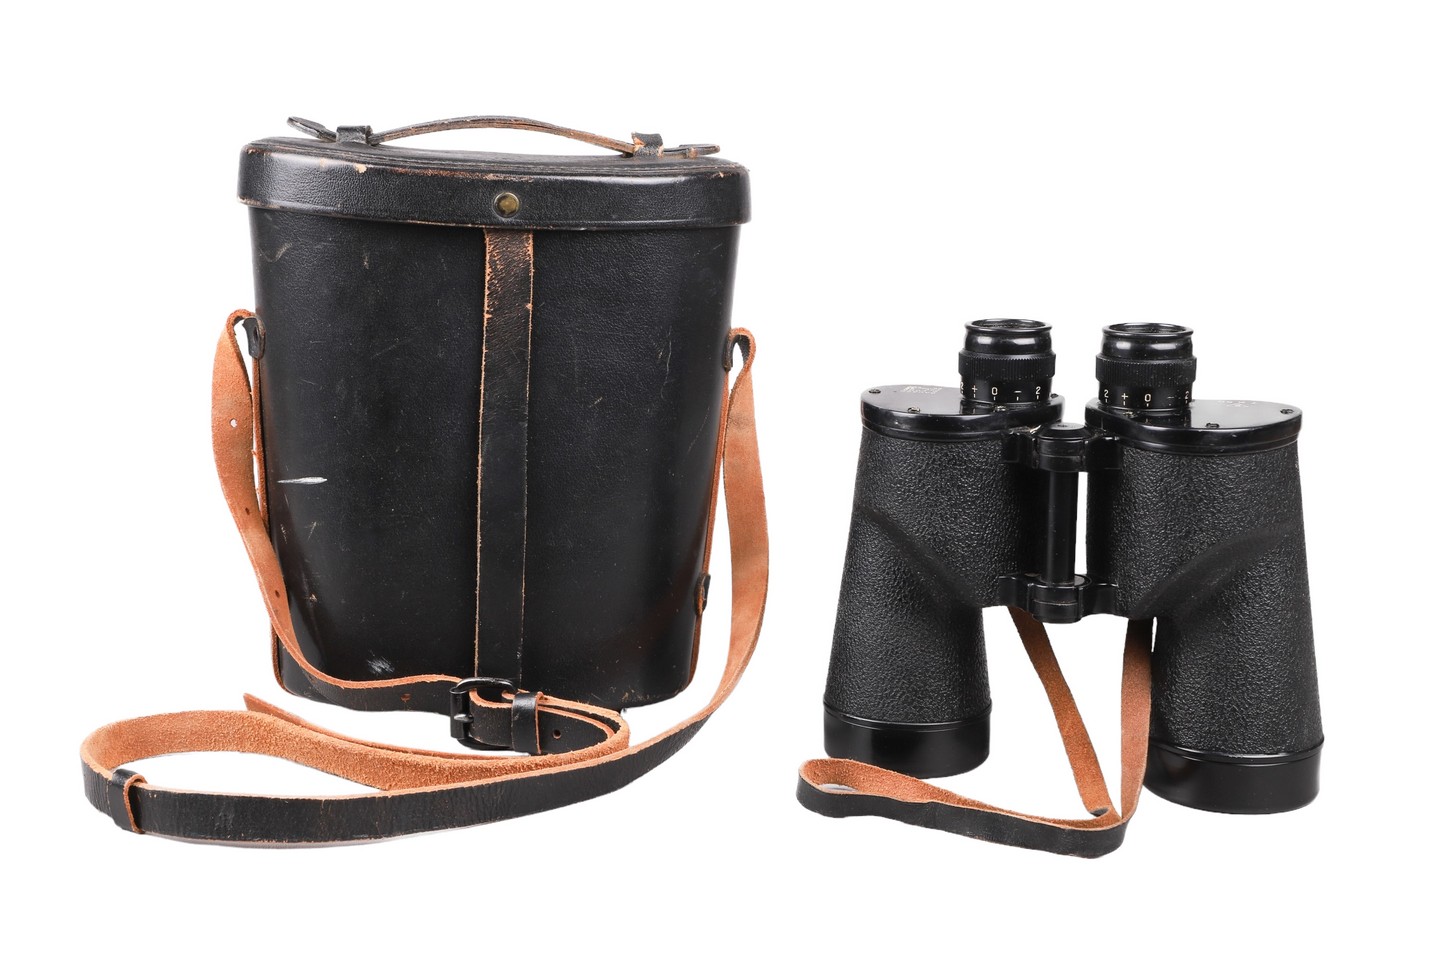 Bausch & Lomb 7X50 binoculars,